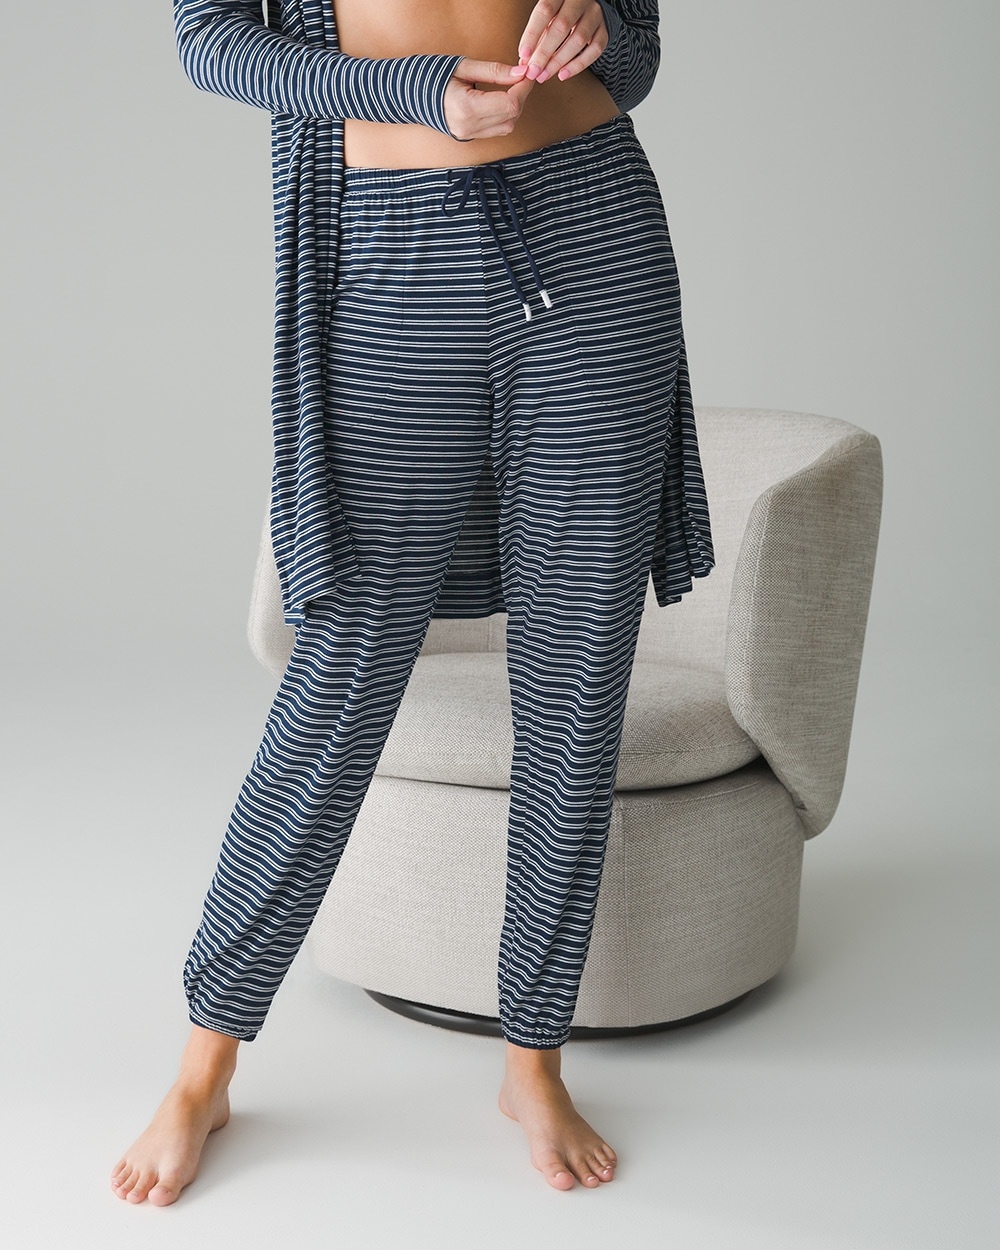 American Trends Womens Plush Pajama Pants Soft Fuzzy Pajama